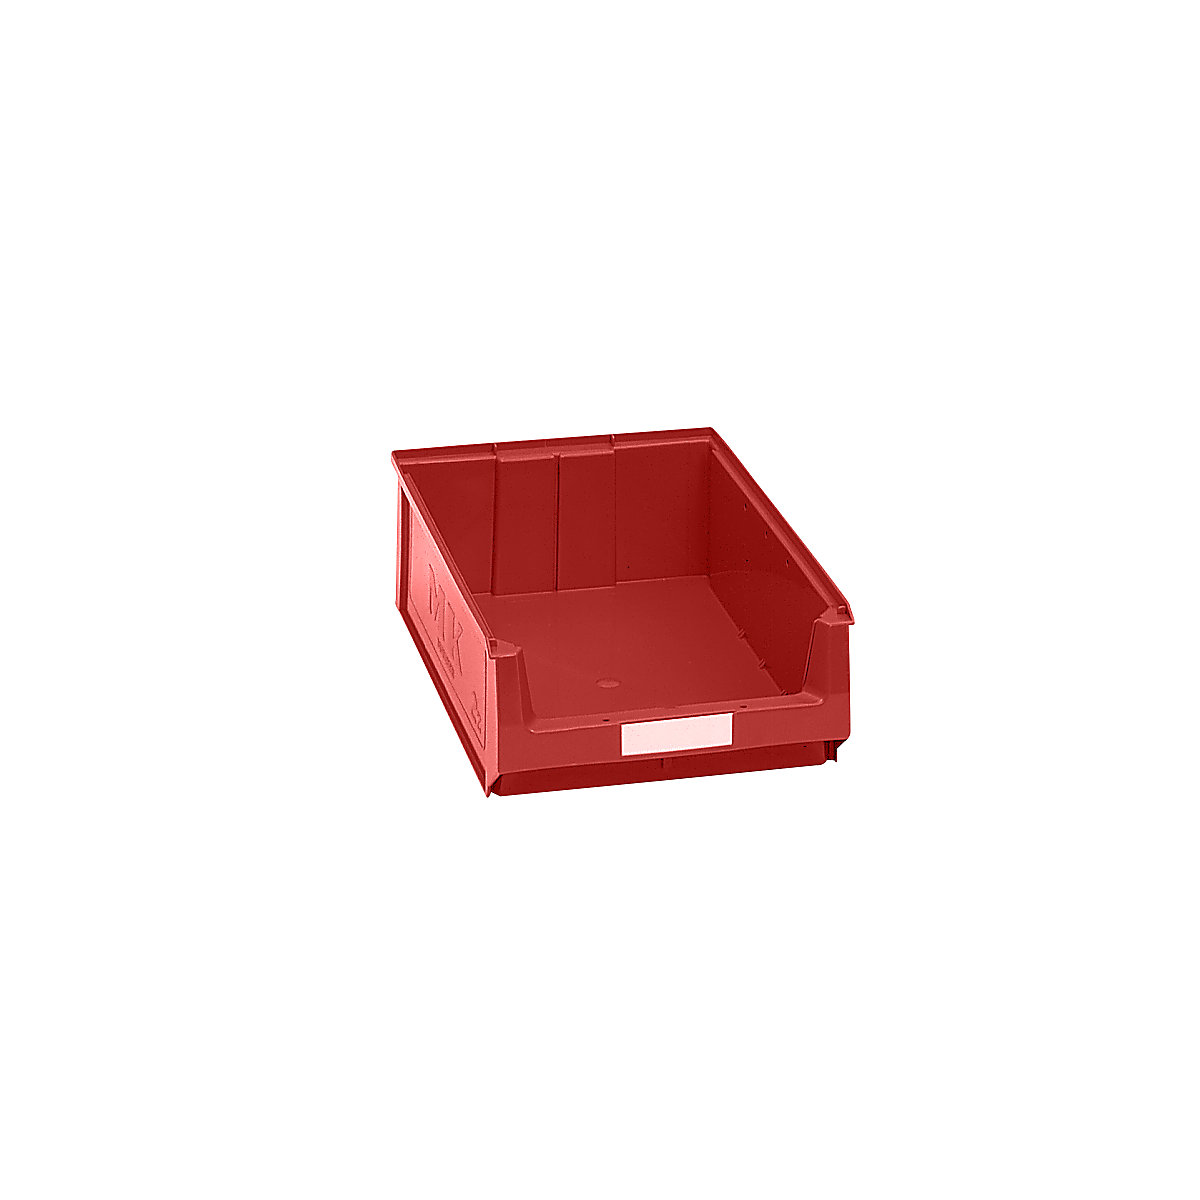 Caixa de armazenagem à vista em polietileno – mauser, CxLxA 500 x 310 x 140 mm, vermelho, embalagem com 14 unidades-7